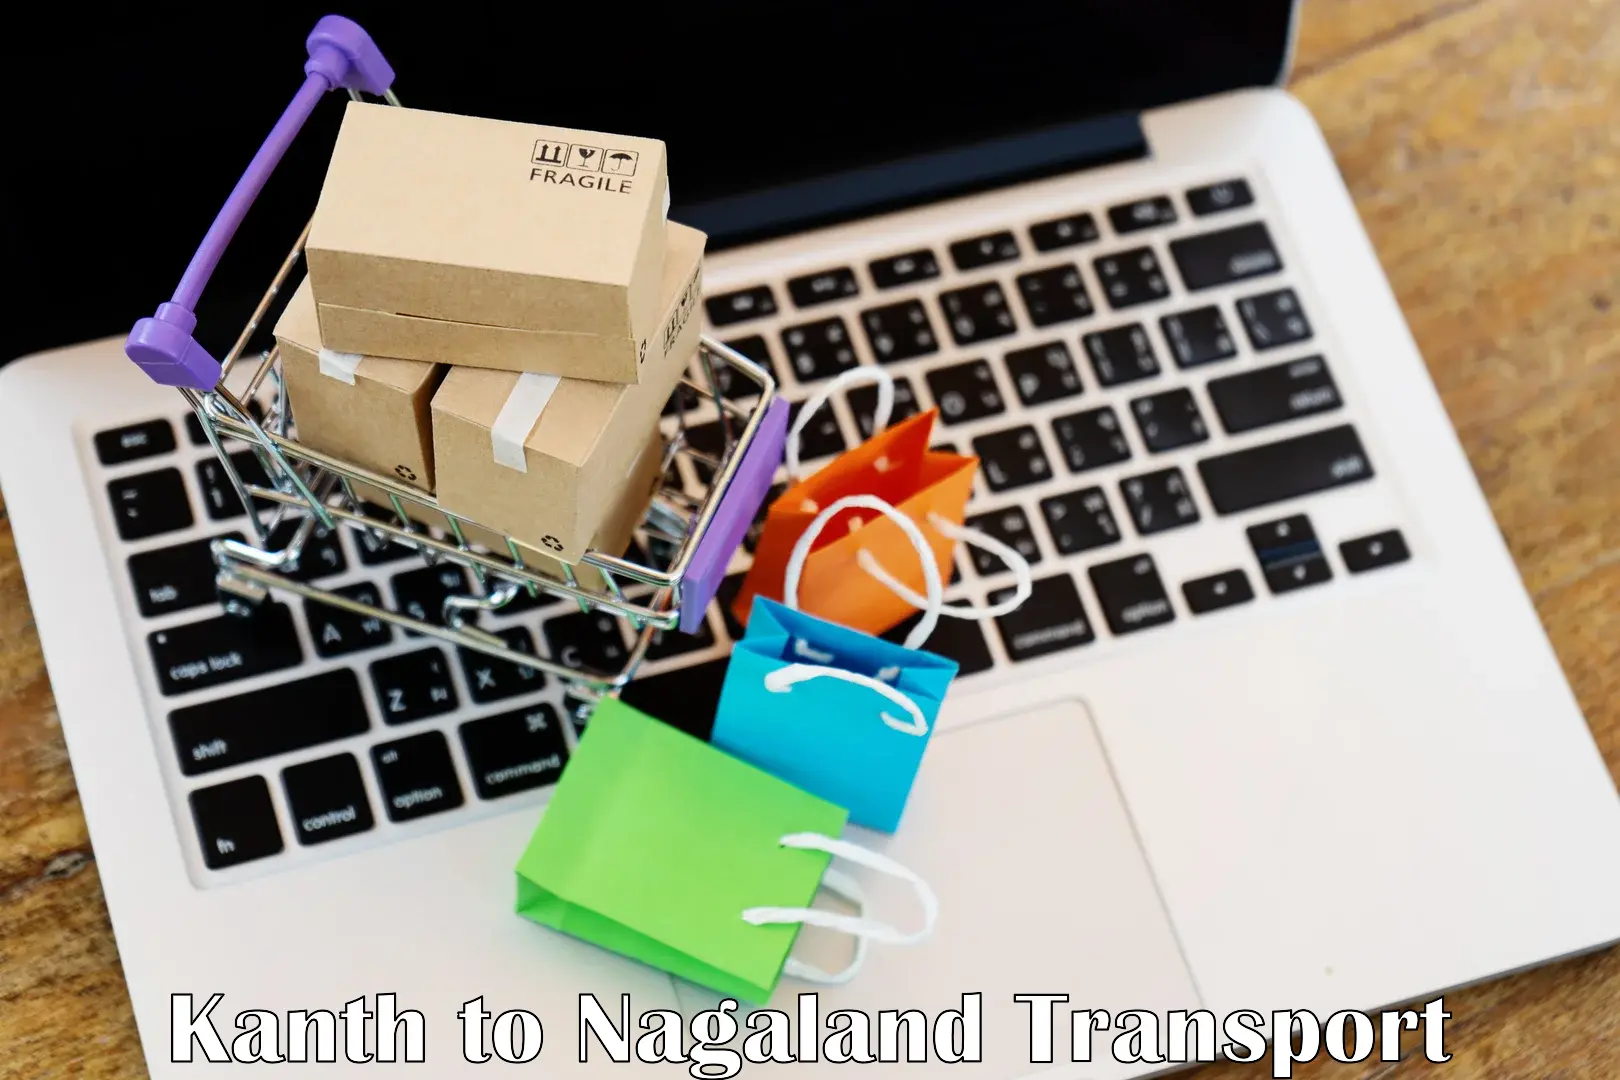 Online transport service Kanth to NIT Nagaland